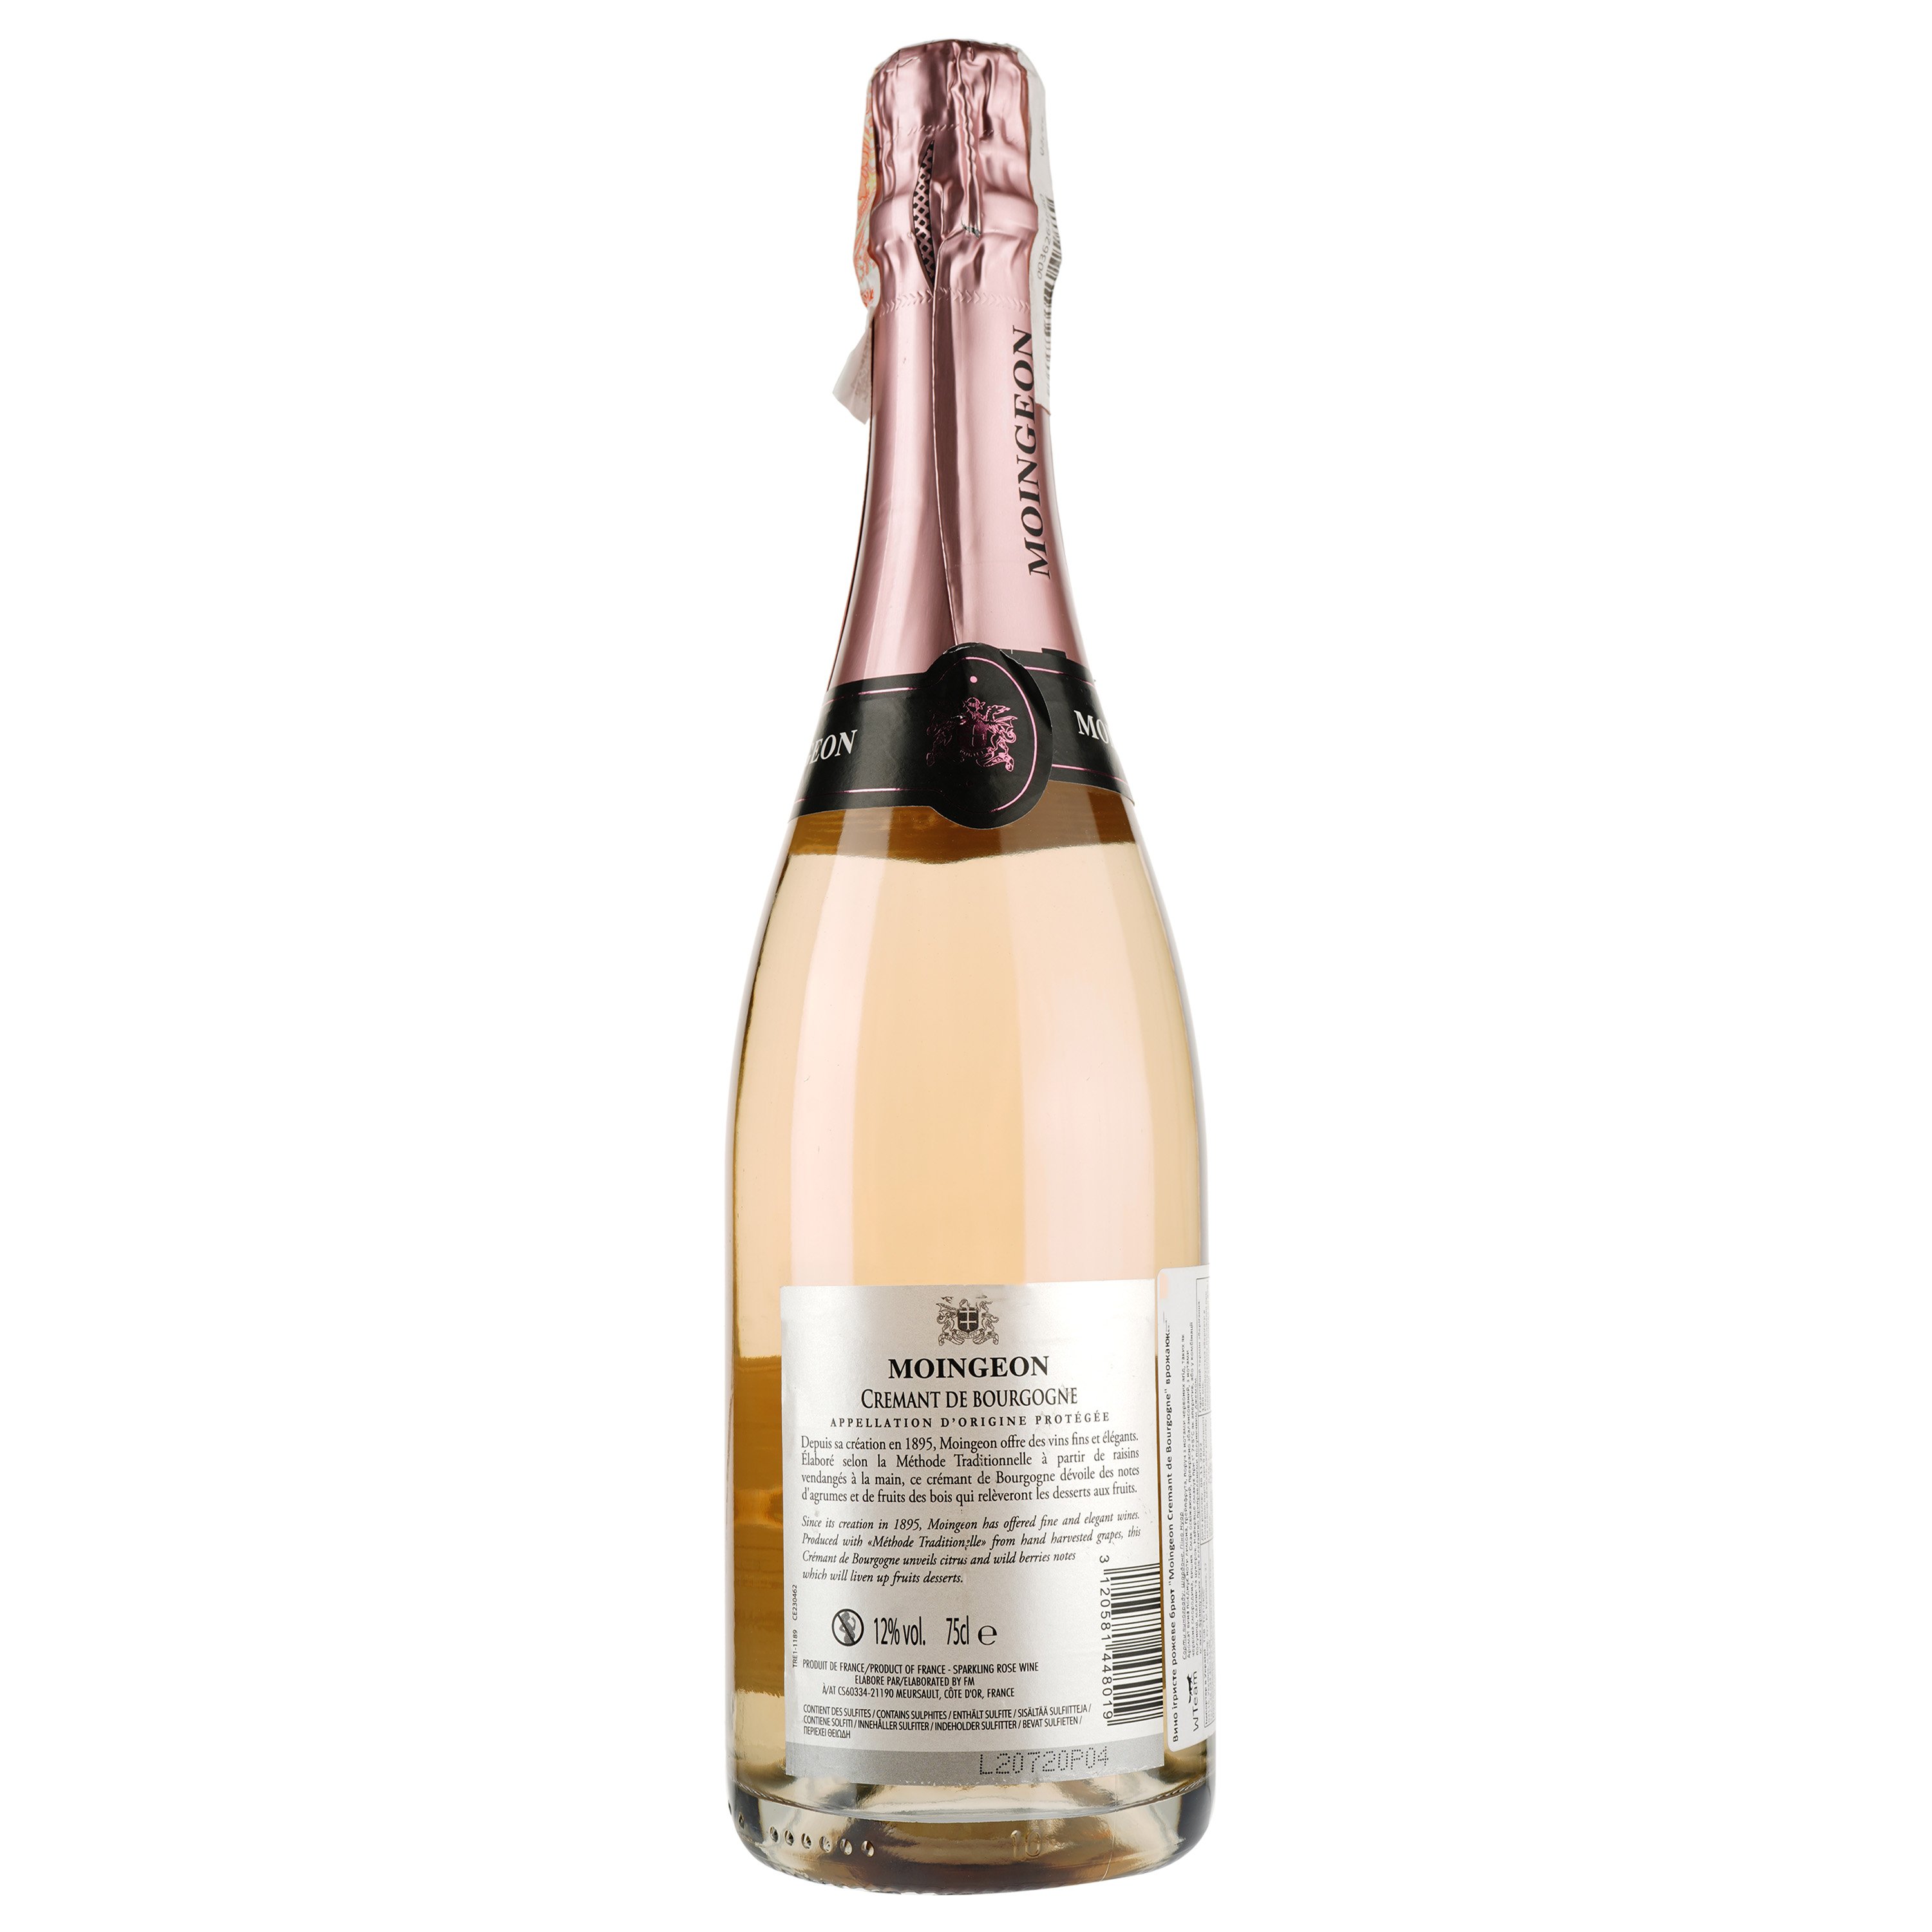 Ігристе вино Les Grands Chais Cremant de Bourgogne Moingeon, рожеве, брют, 12%, 0,75 л - фото 2